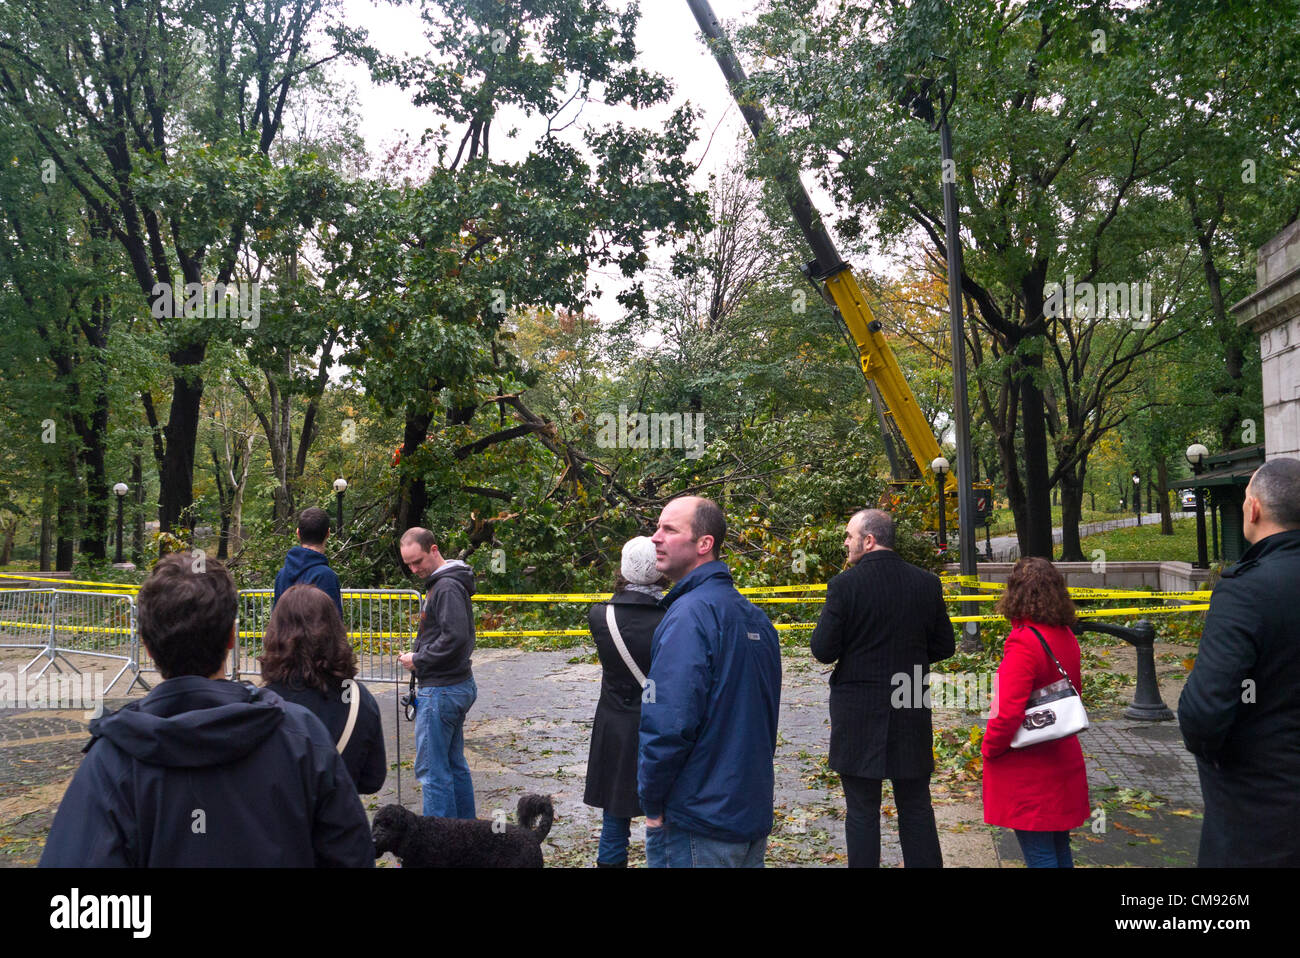 NEW YORK - 30 ottobre: 2012 persone si riuniscono per guardare e scattare foto dei lavoratori lottando per rimuovere gli alberi abbattuti nel parco centrale di un giorno dopo l uragano Sandy Ottobre 30, 2012 in New York City. (Foto di Donald Bowers ) Foto Stock